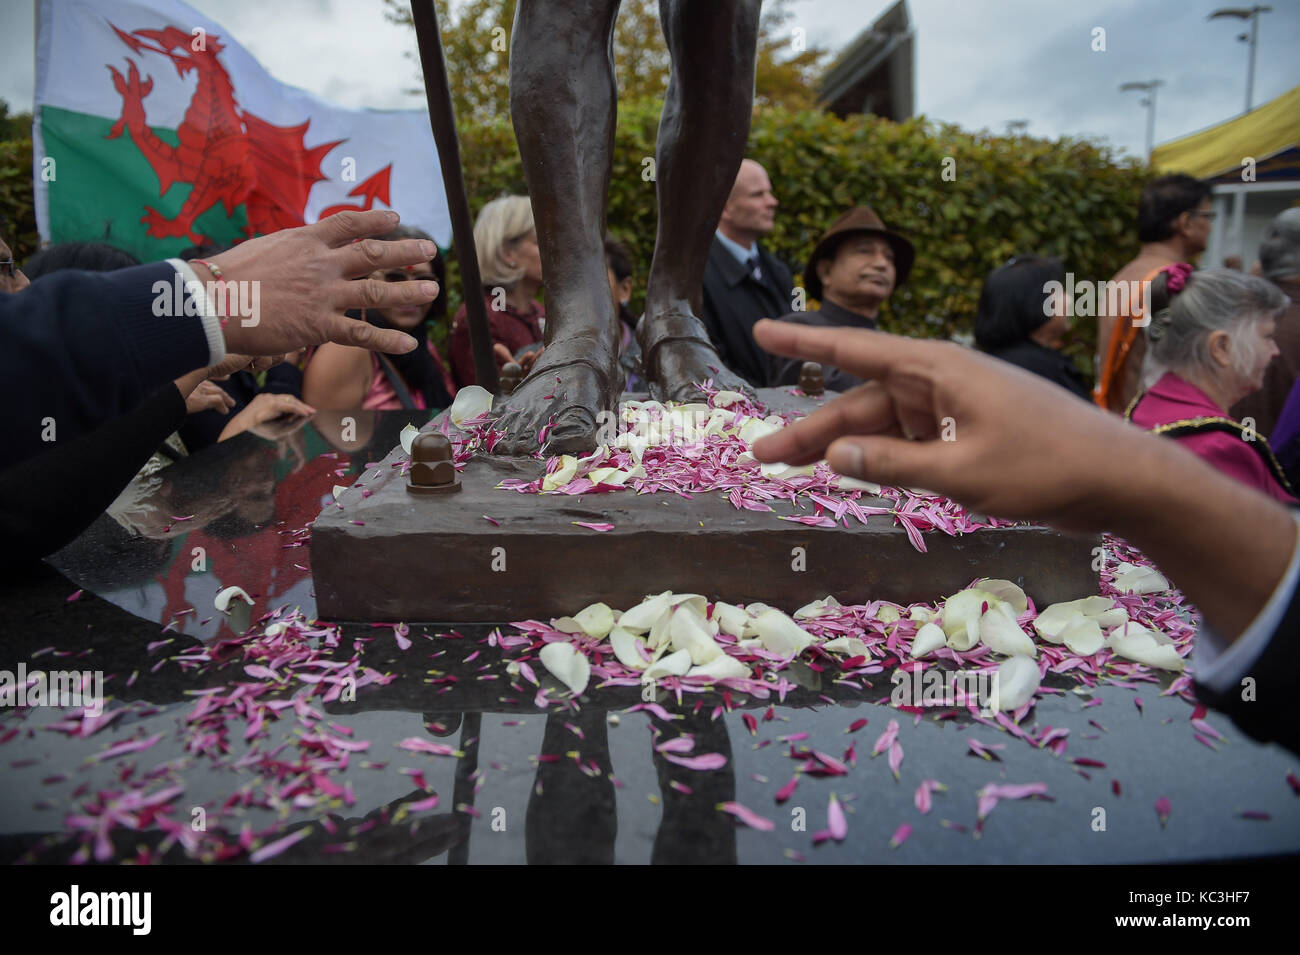 Menschen verbreitet Blütenblätter zu Füßen der Statue von Mahatma Gandhi, wie es in der Bucht von Cardiff, Wales vorgestellt, der Tag seiner Geburt im Jahre 1869 zu markieren und den Internationalen Tag der Gewaltlosigkeit, die auch am 2. Oktober gefeiert wird. Stockfoto